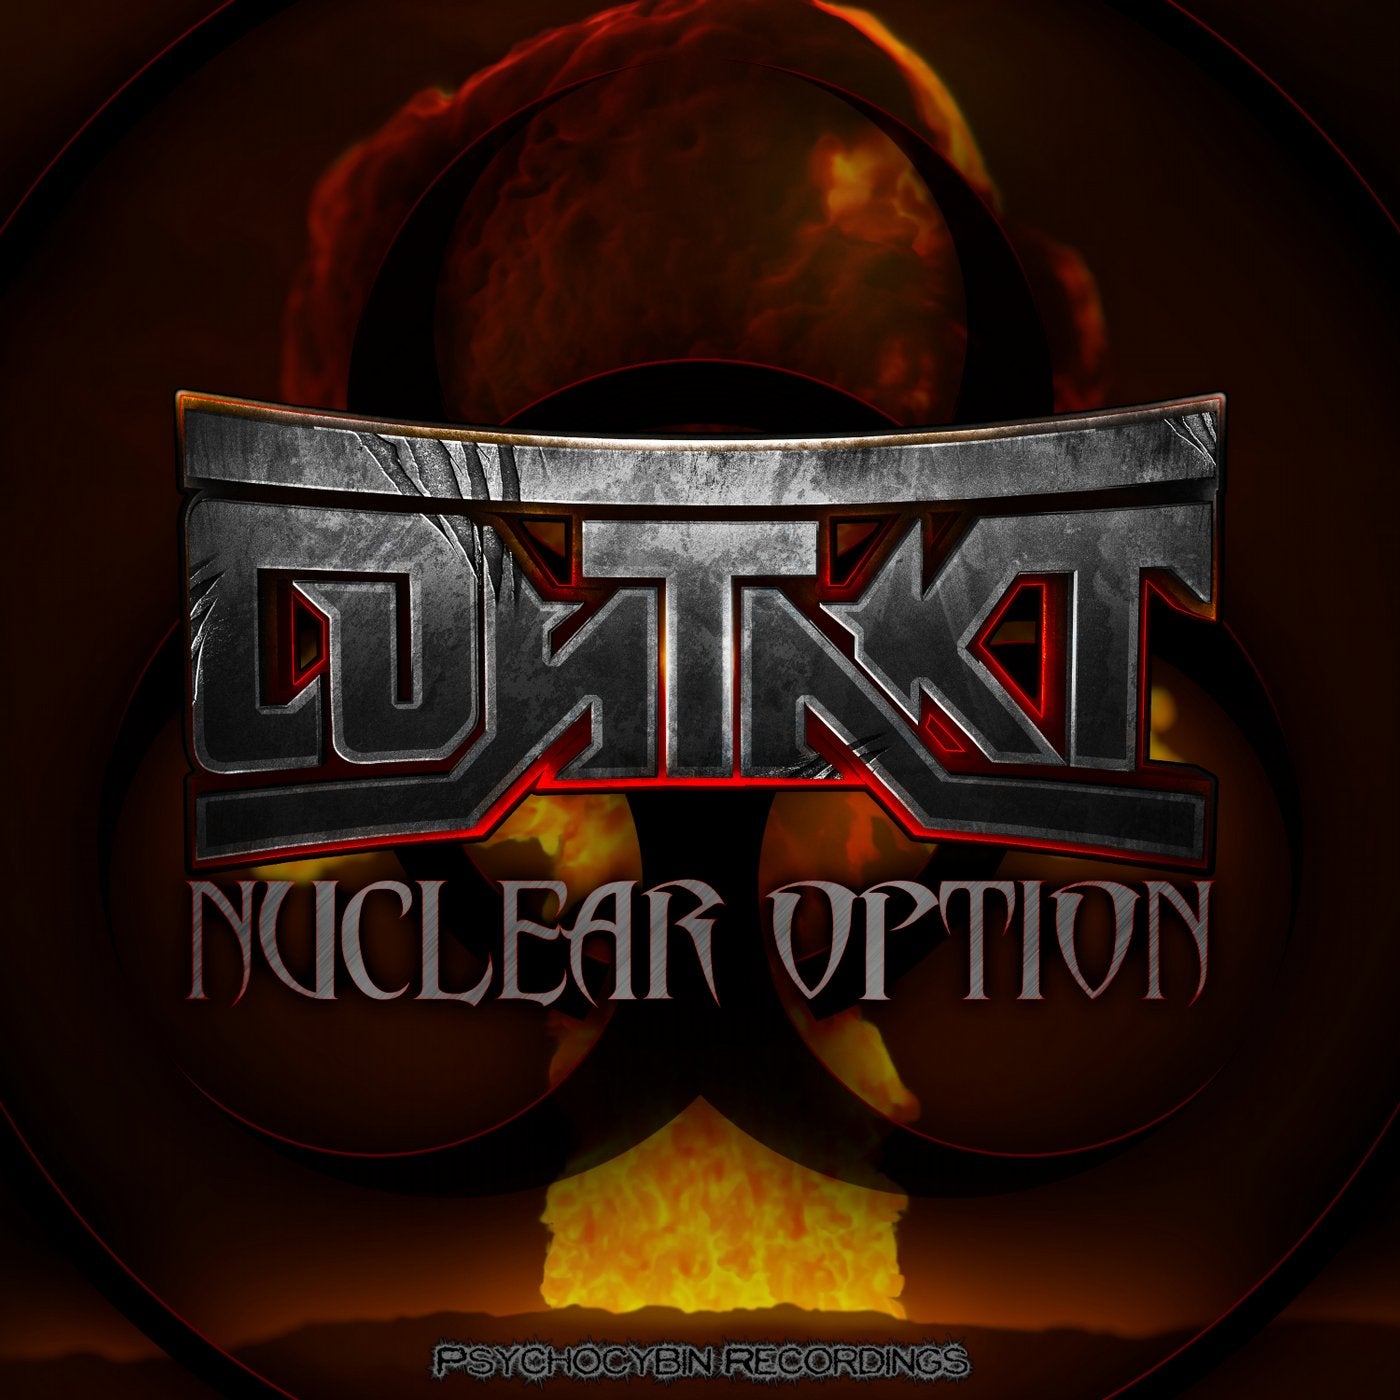 Nuclear Option